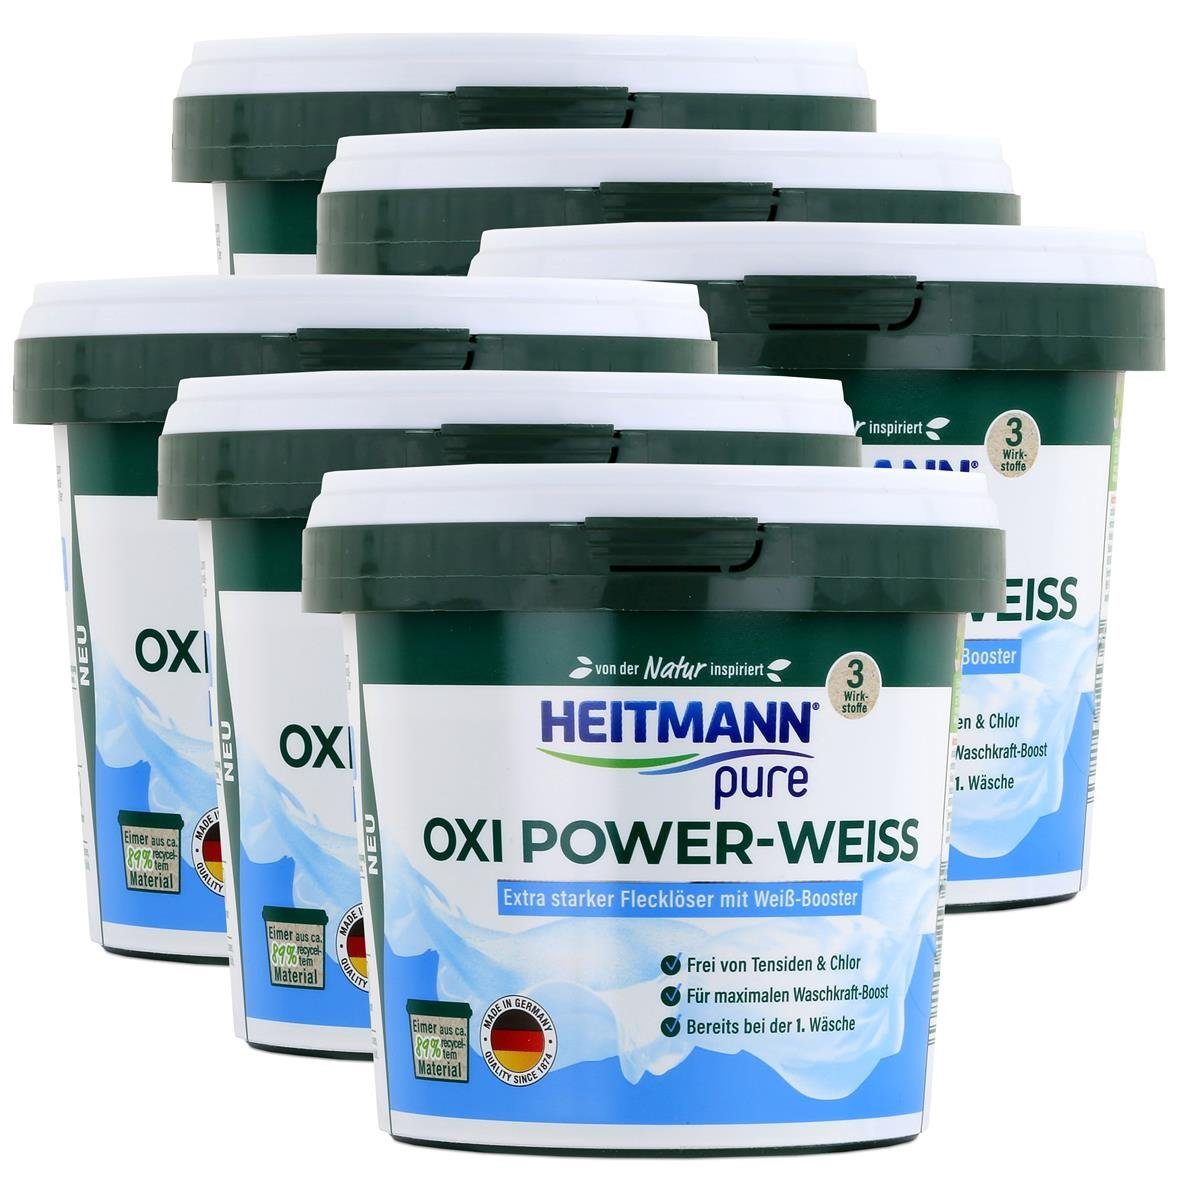 Weiß-Booster pure Power-Weiss Oxi - Flecklöser HEITMANN Heitmann 500g Vollwaschmittel (6er mit